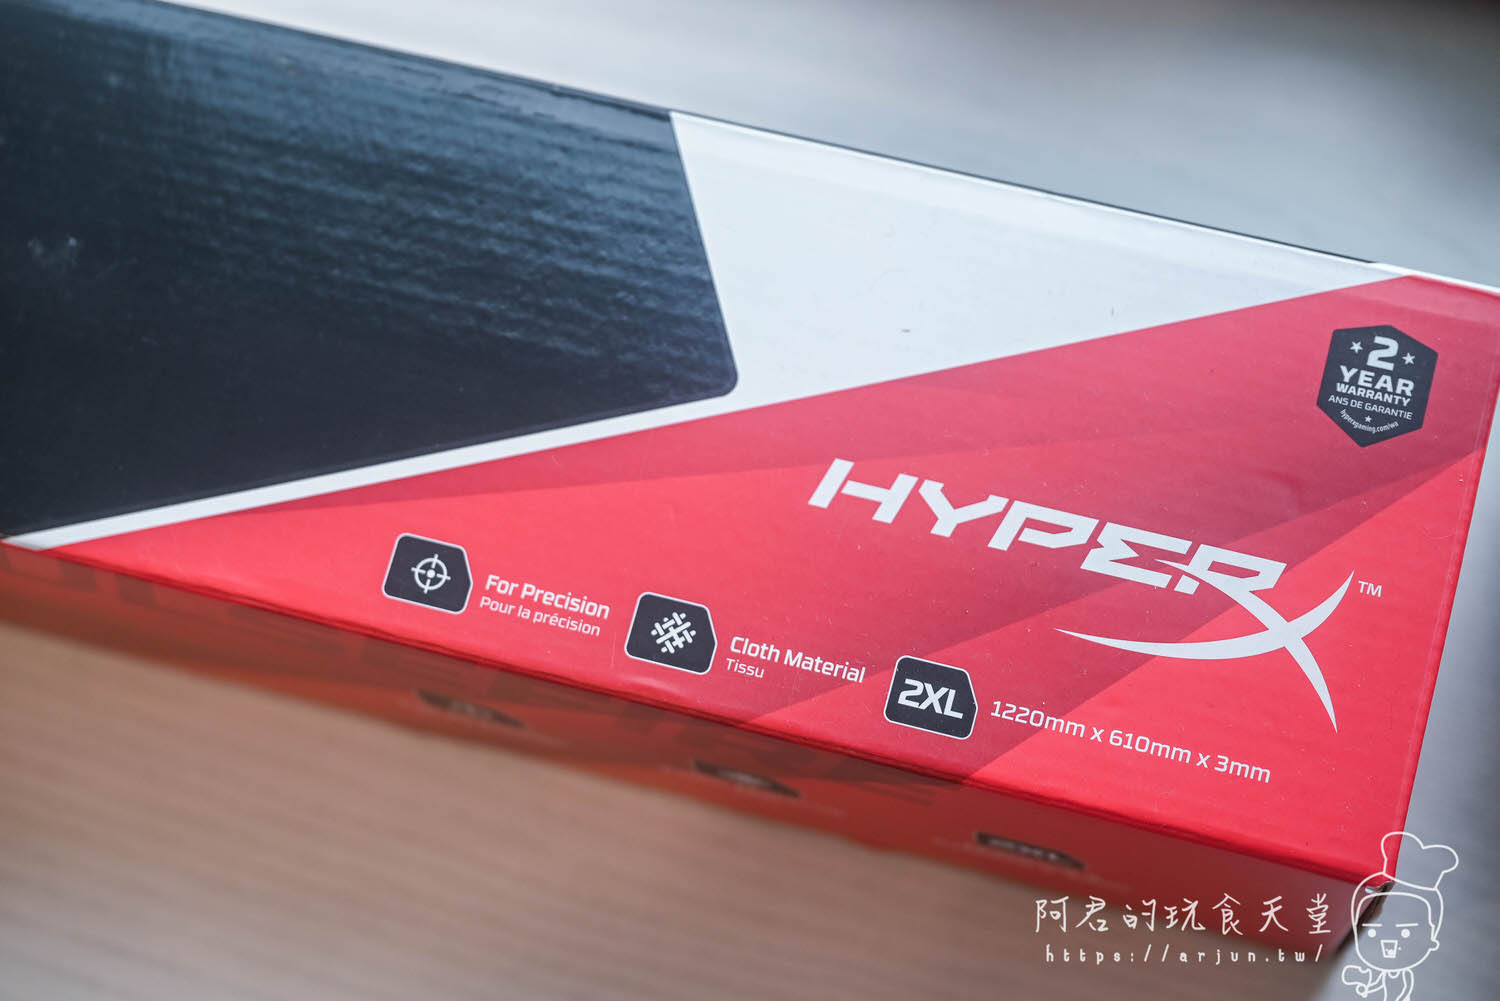 【開箱】HyperX haste 2 超羽量級滑鼠 搭配Pulsefire Mat 2XL超重量級滑鼠墊